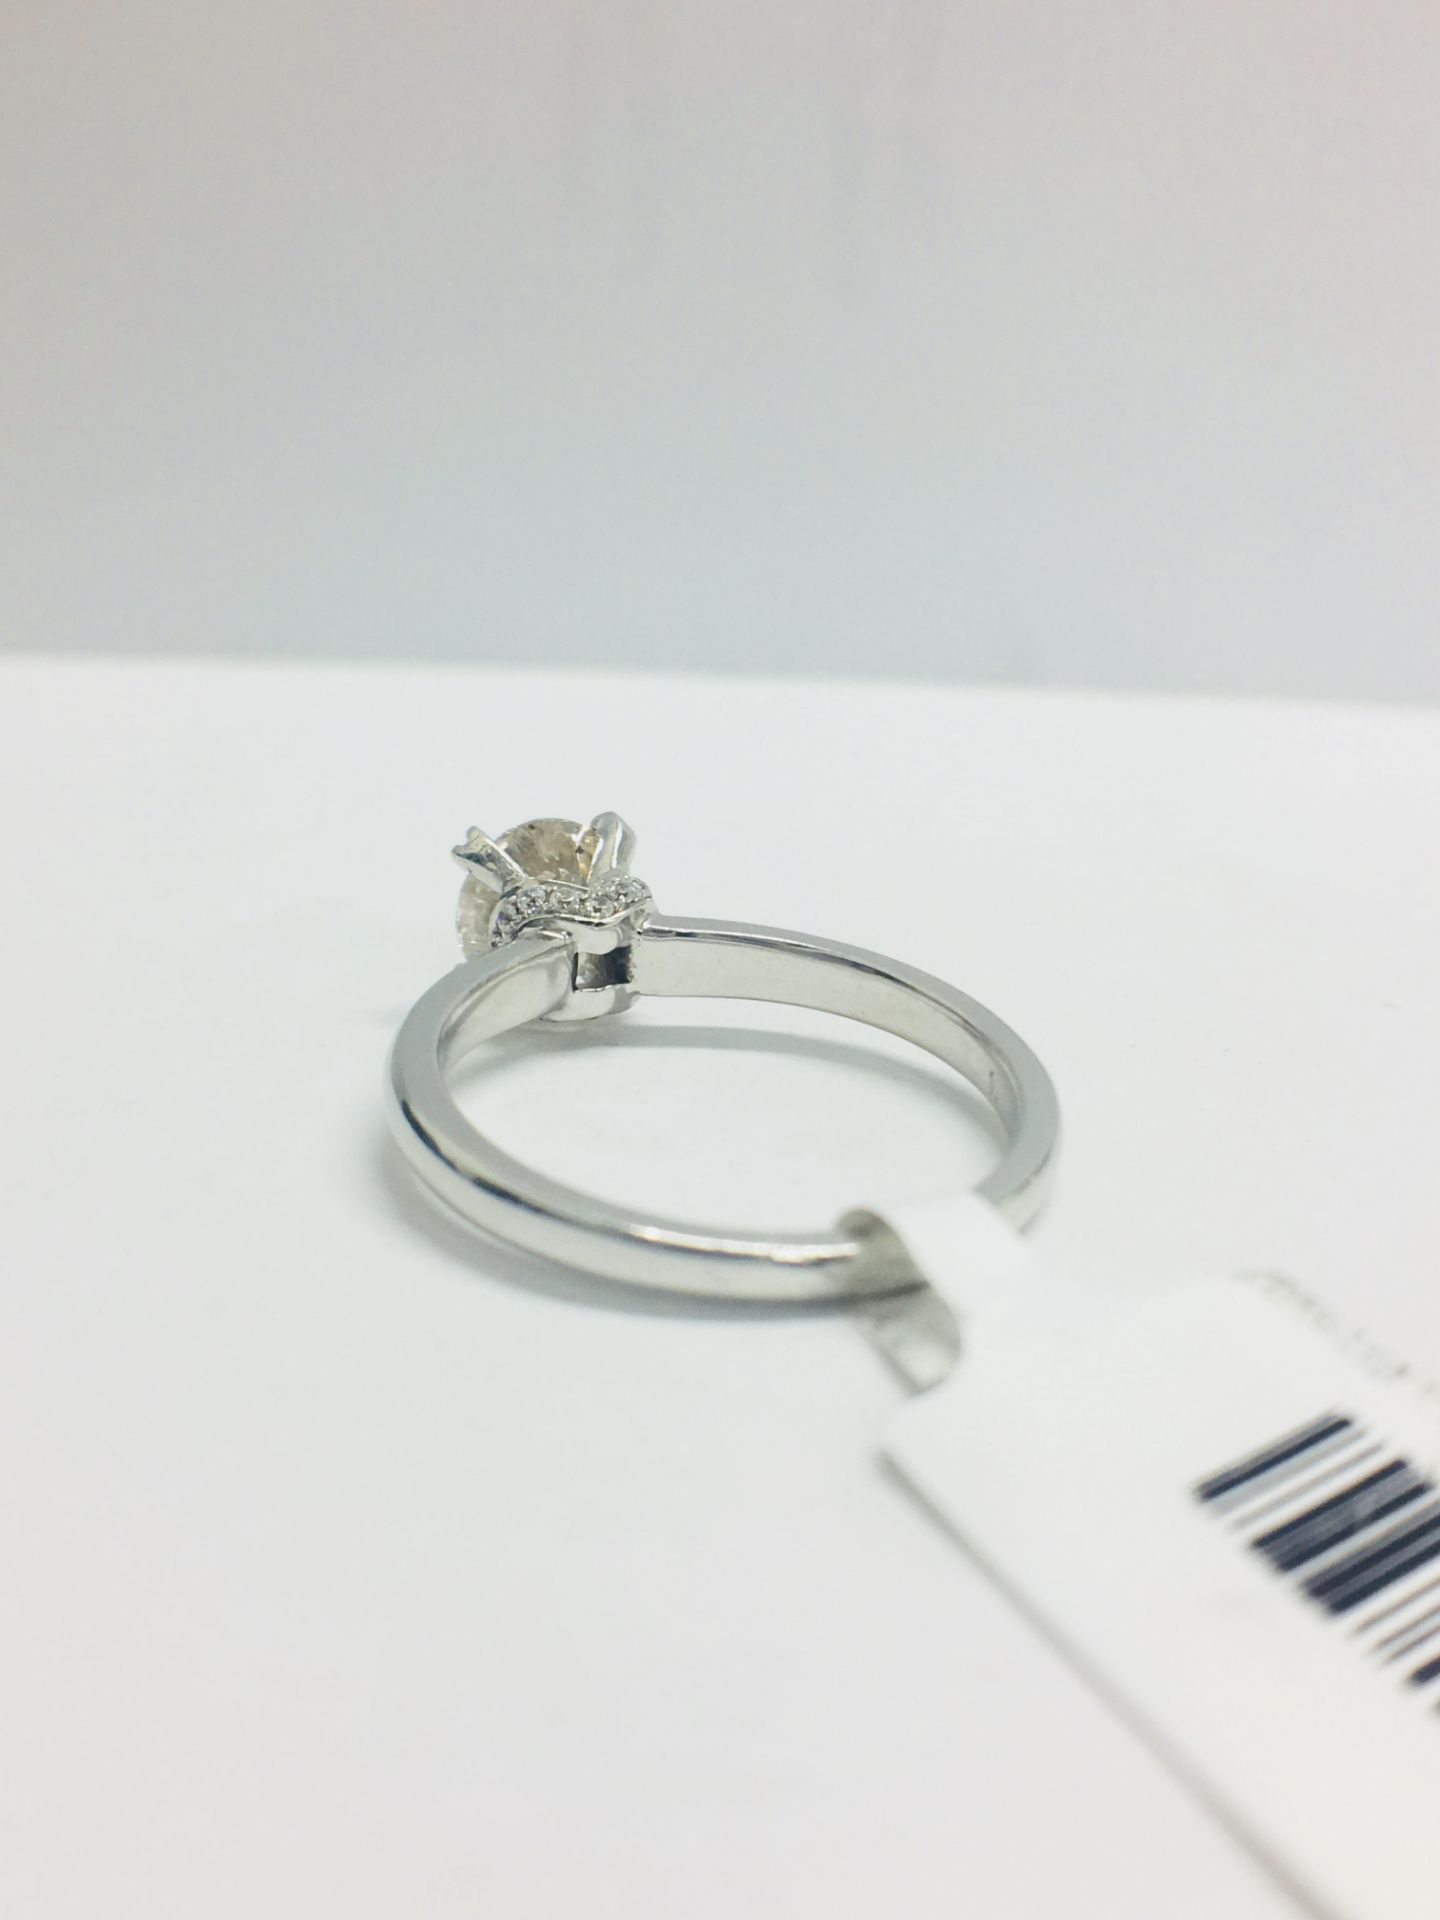 1ct Diamond Solitaire ring set in Platinum diamnd setting - Image 6 of 13